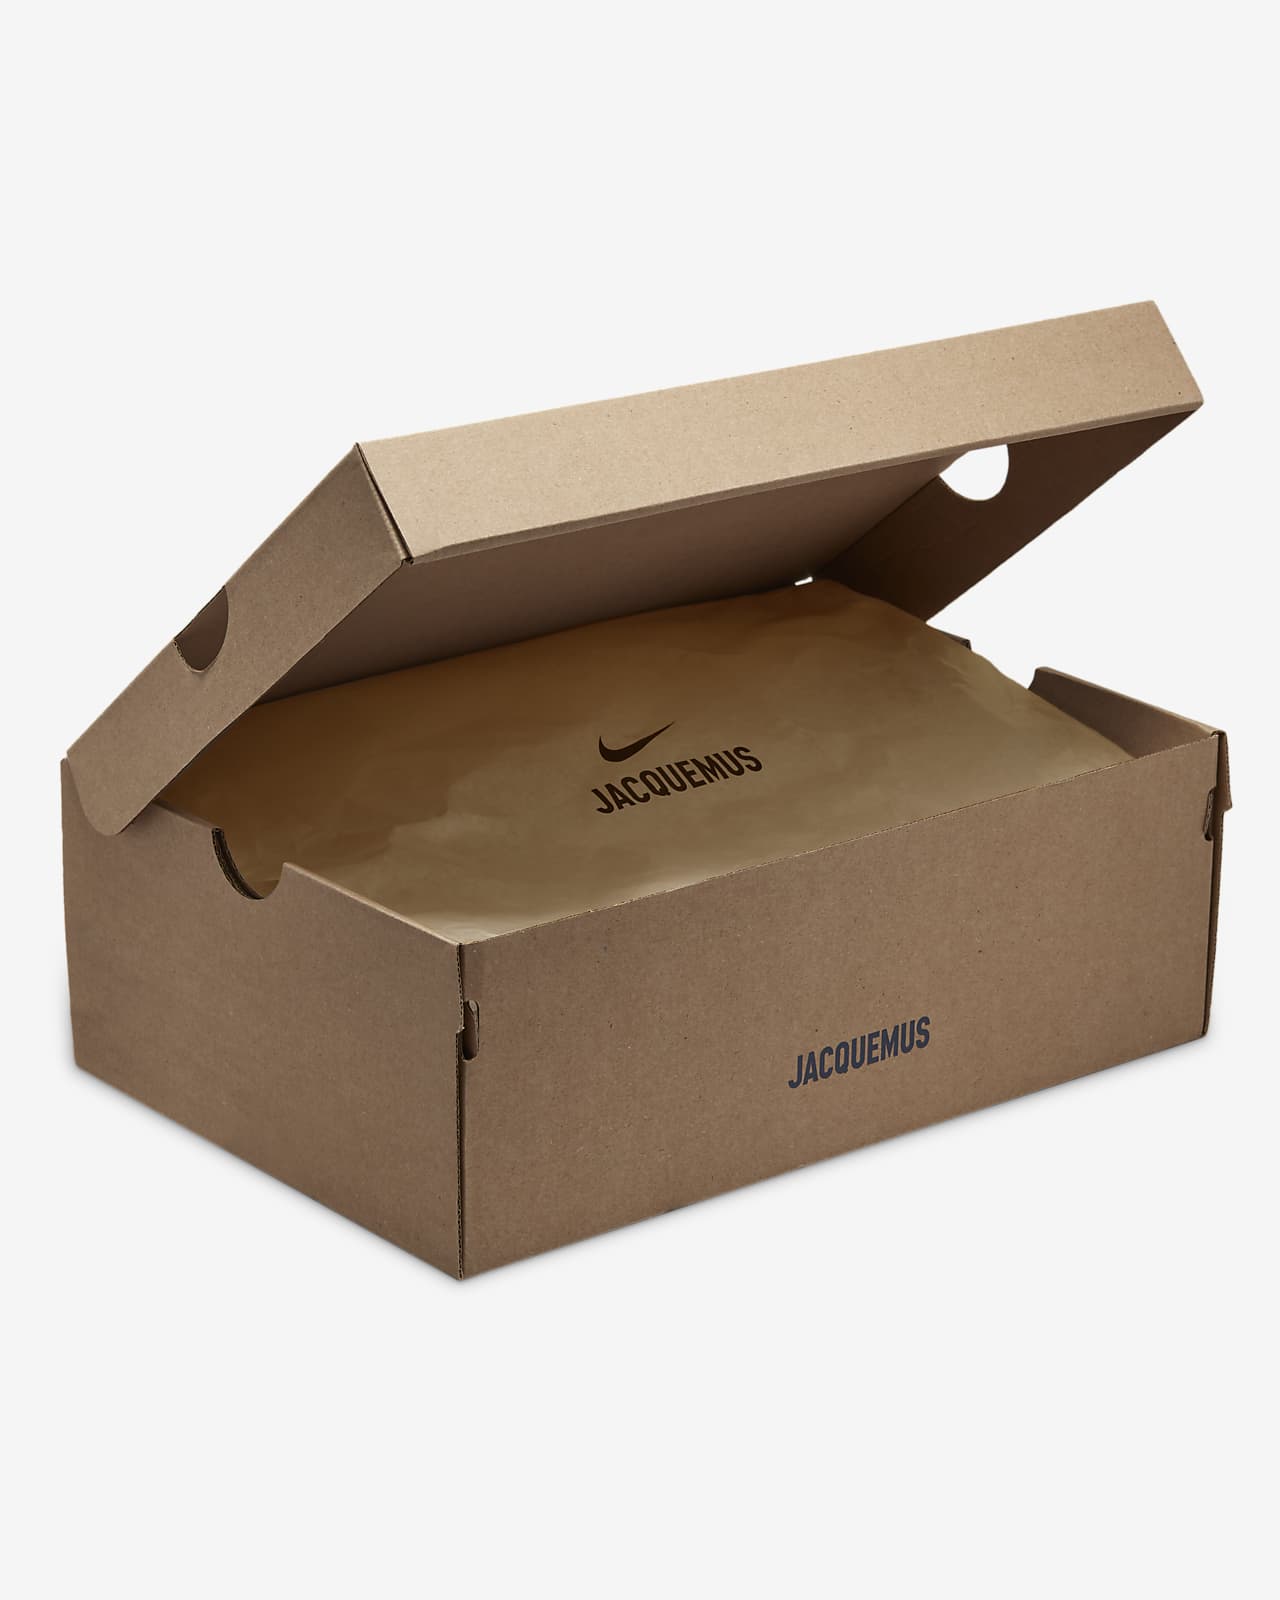 chanel underwear packaging design box 1